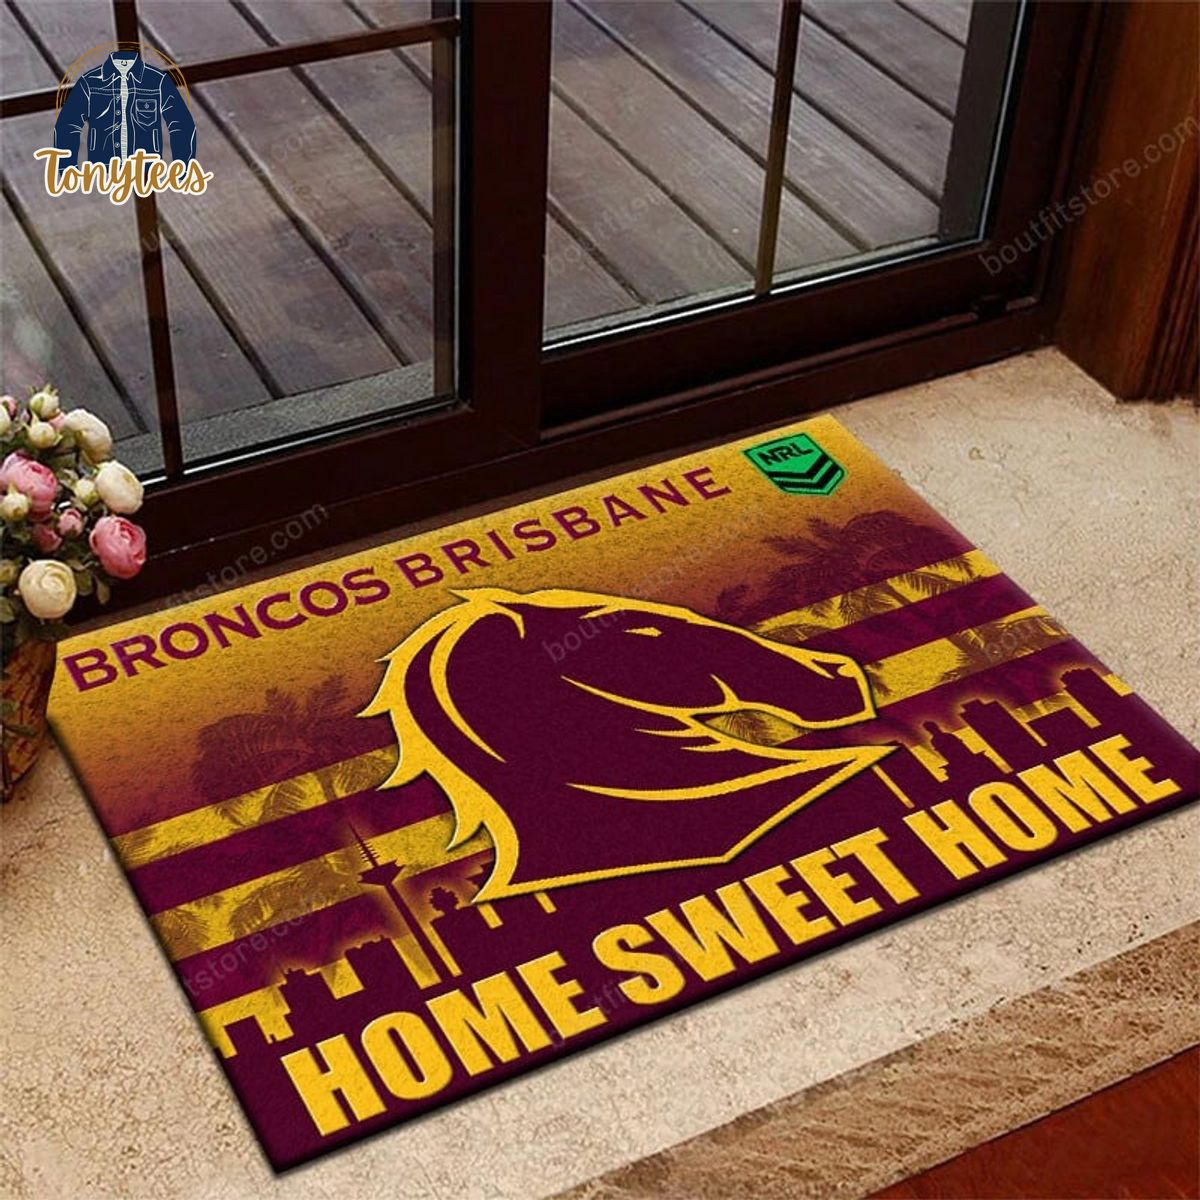 Brisbane Broncos Home Sweet Home Doormat